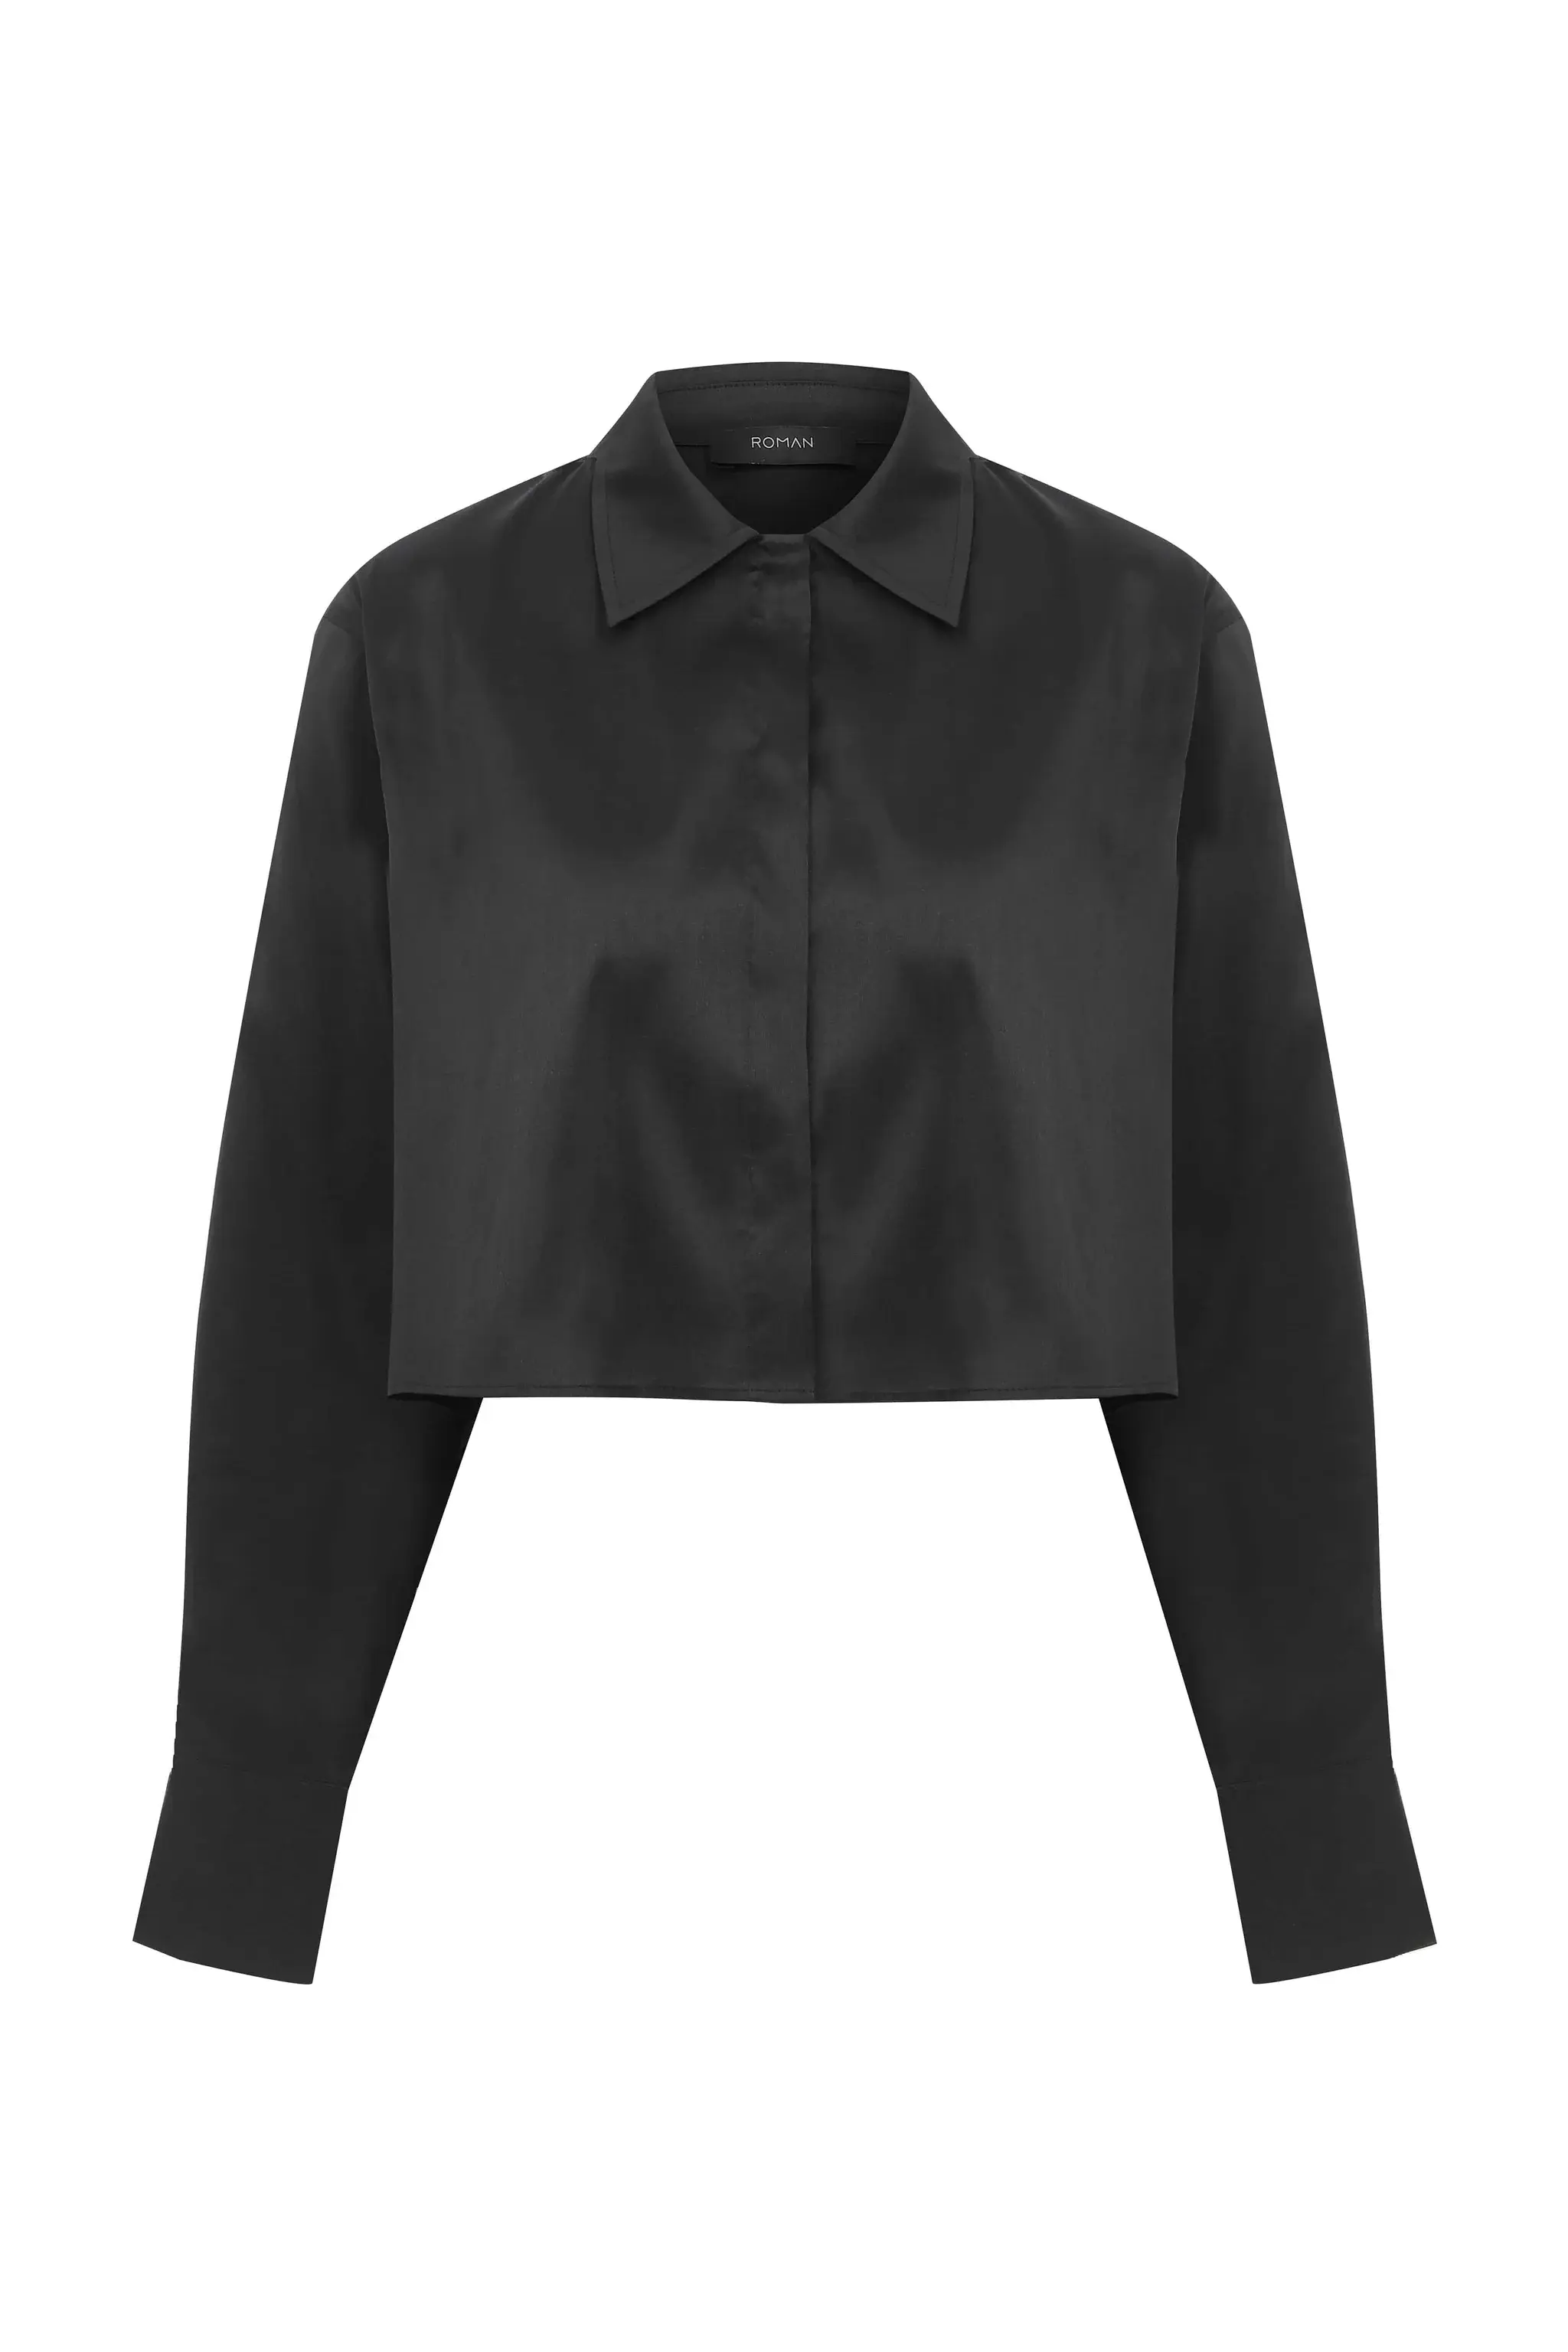 Roman Cropped Black Women's Shirt - 4 / Black. 1